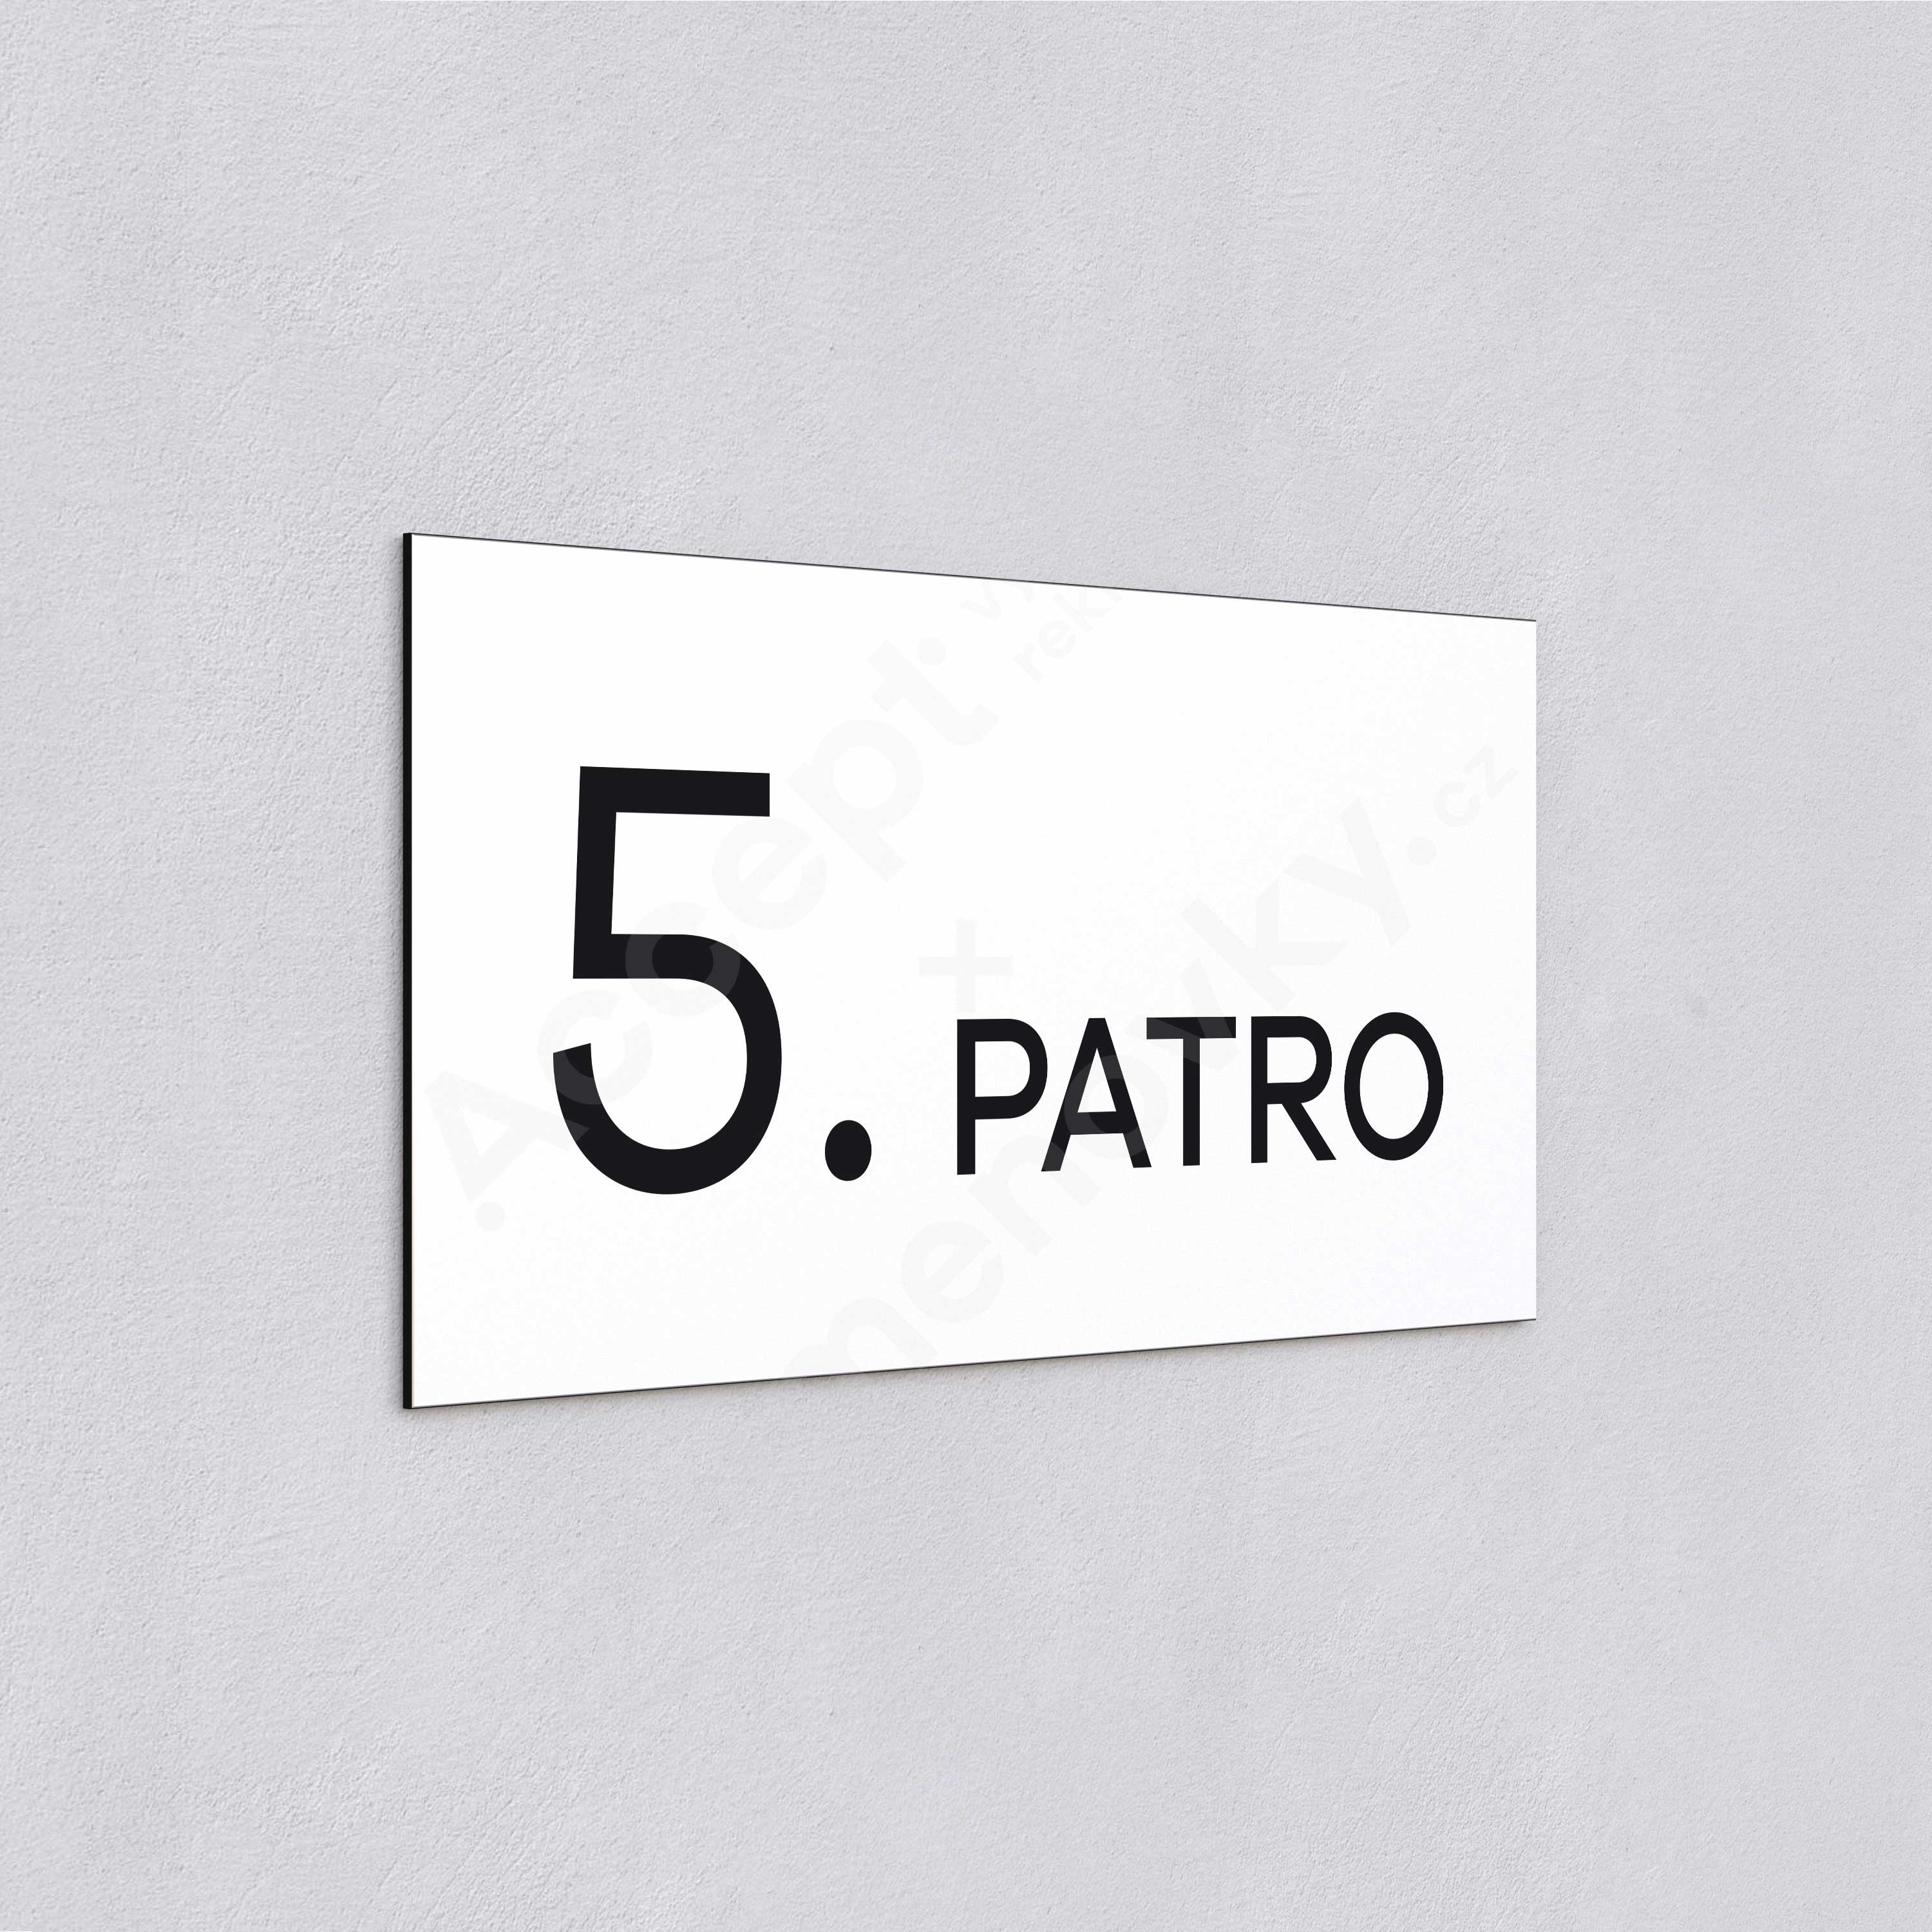 Označení podlaží "5. PATRO" - bílá tabulka - černý popis